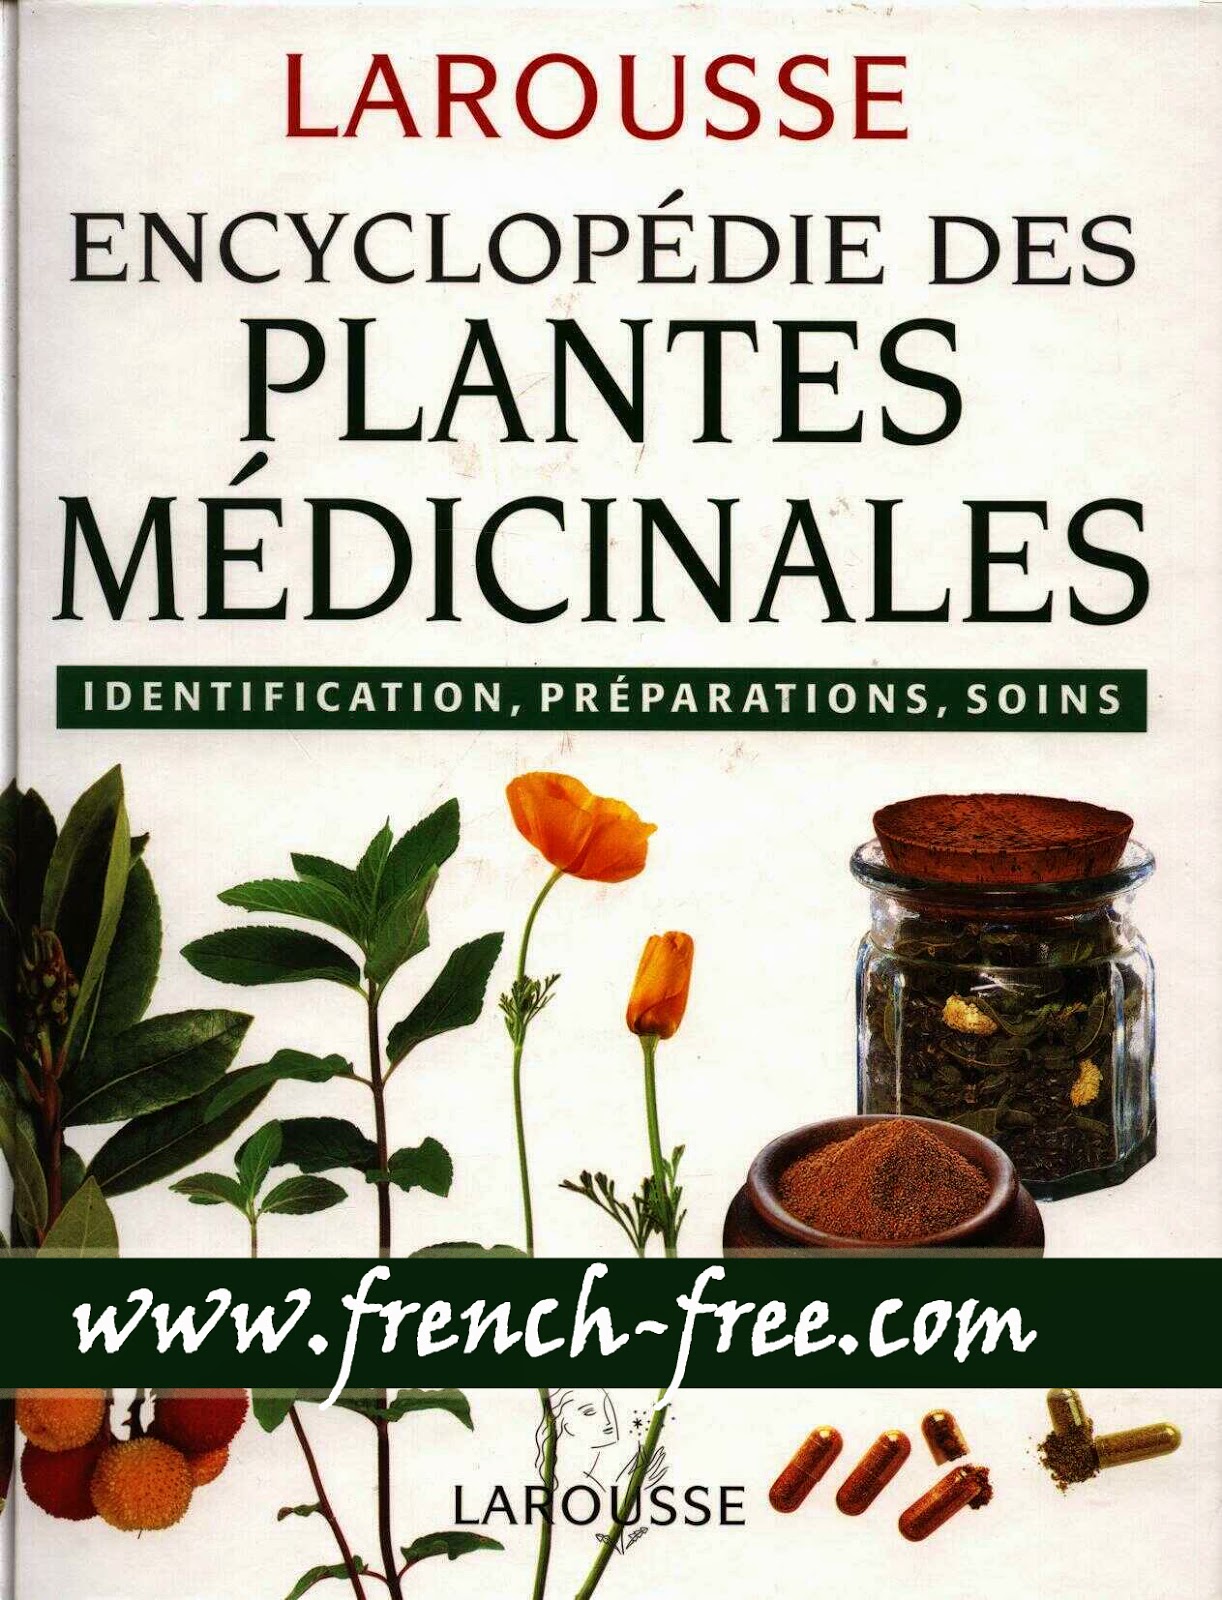 تحميل Larousse Des Plantes Médicinales قاموس النباتات باللغة الفرنسية بالصور Larousse+Des+Plantes+M%C3%A9dicinales+%5Bwww.french-free